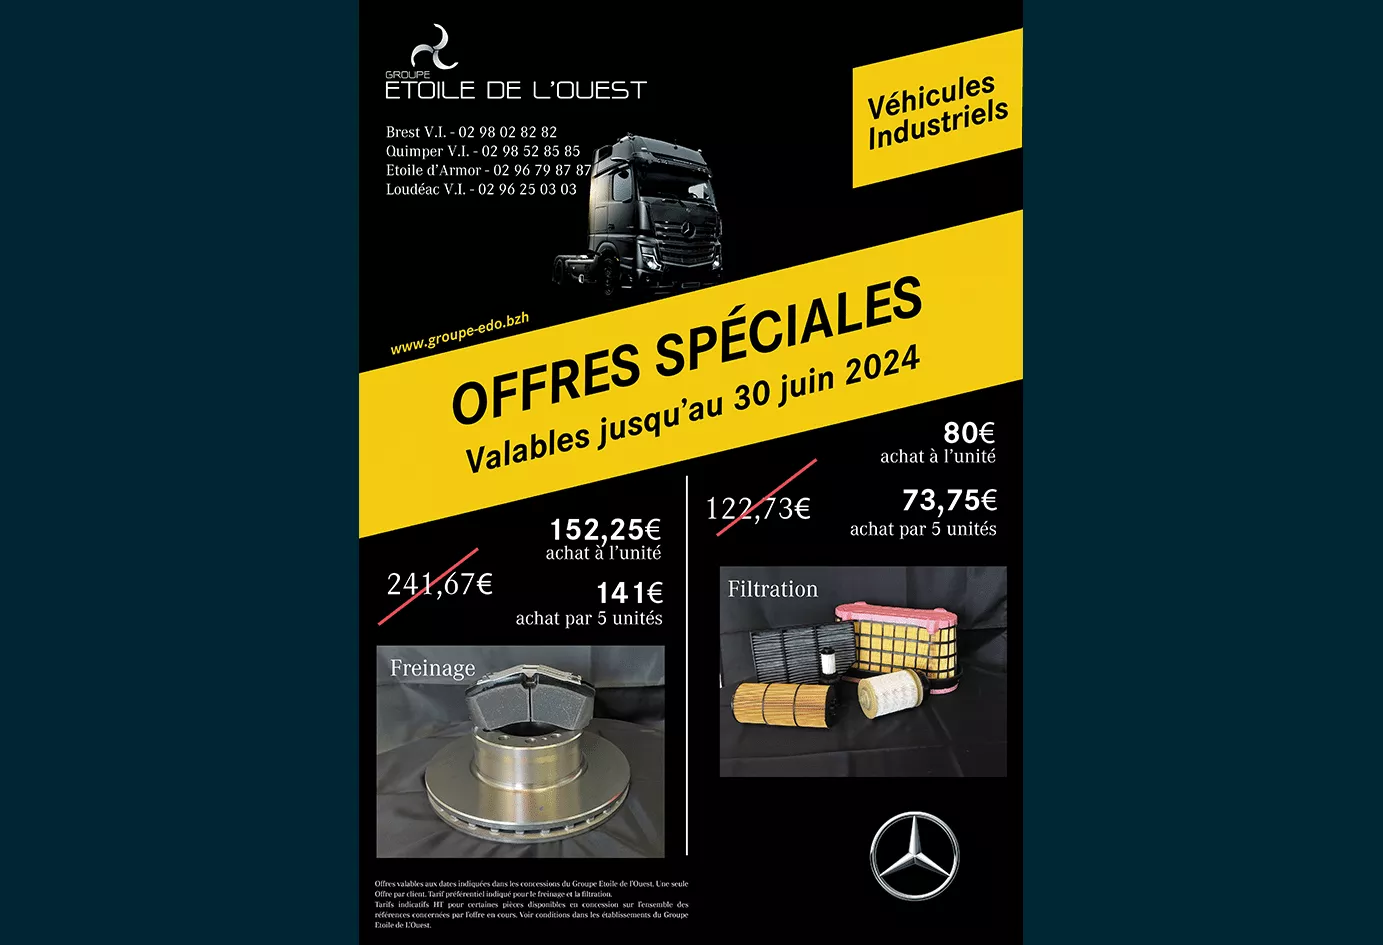 Promotions Freinage et Filtration pour vos camions Mercedes-Benz